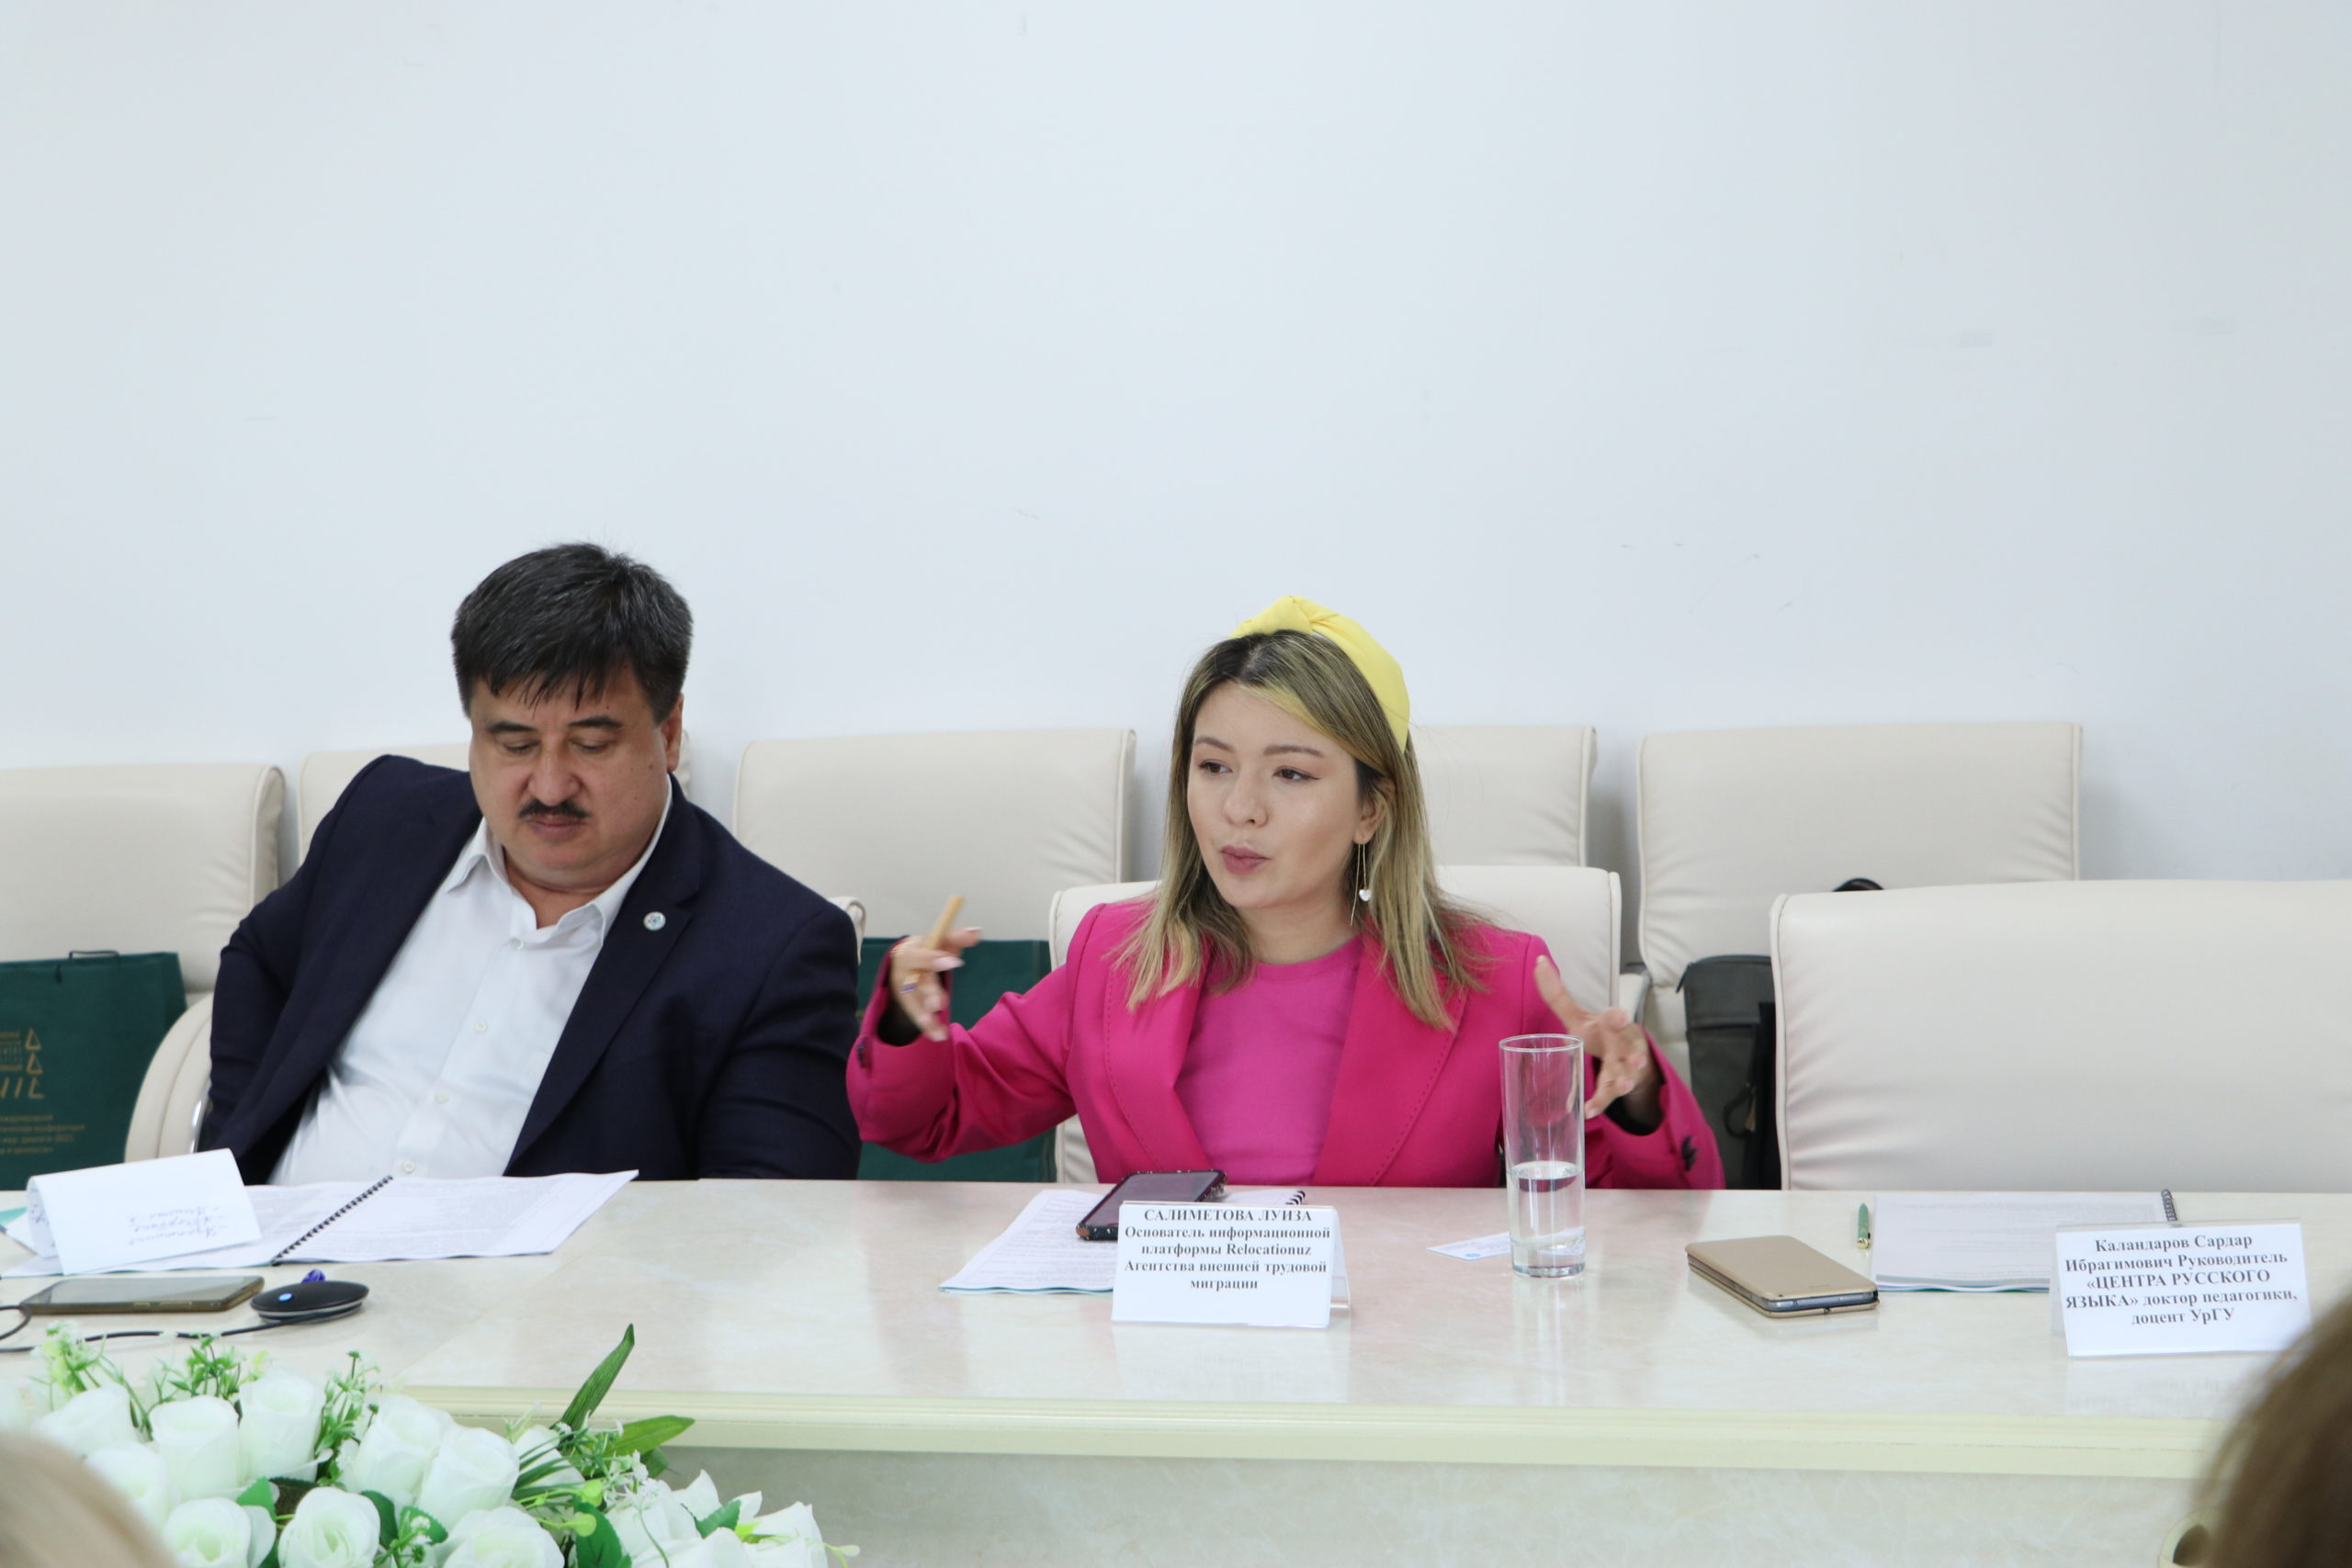 НИИРК – Миграция, релокации, узбекская диаспора. Эксперты делятся мнениями и дают рекомендации